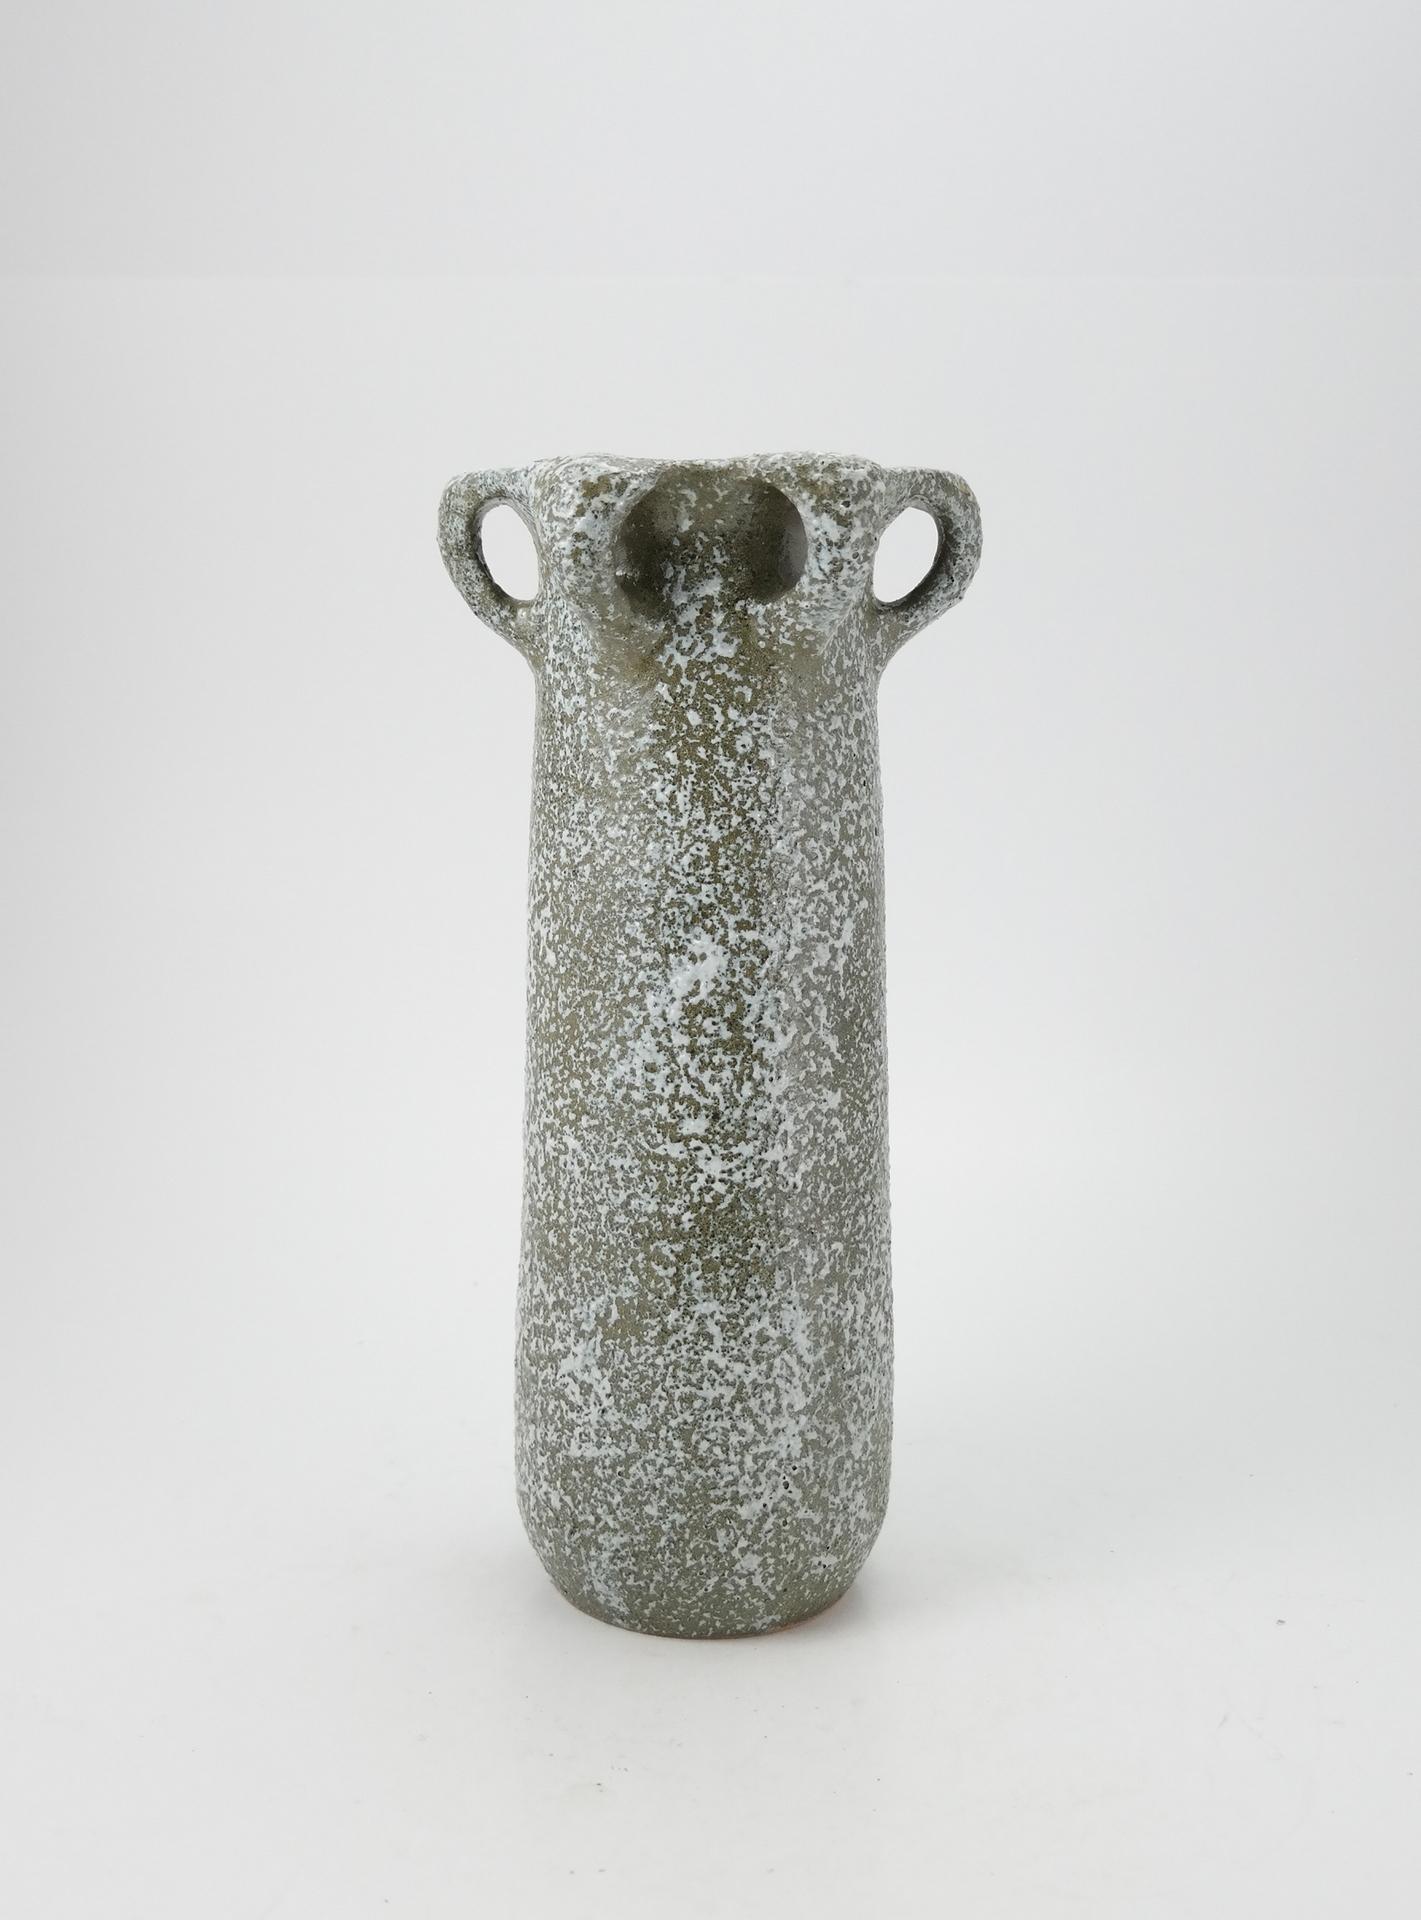 European Midcentury Ceramic Vase 1960s